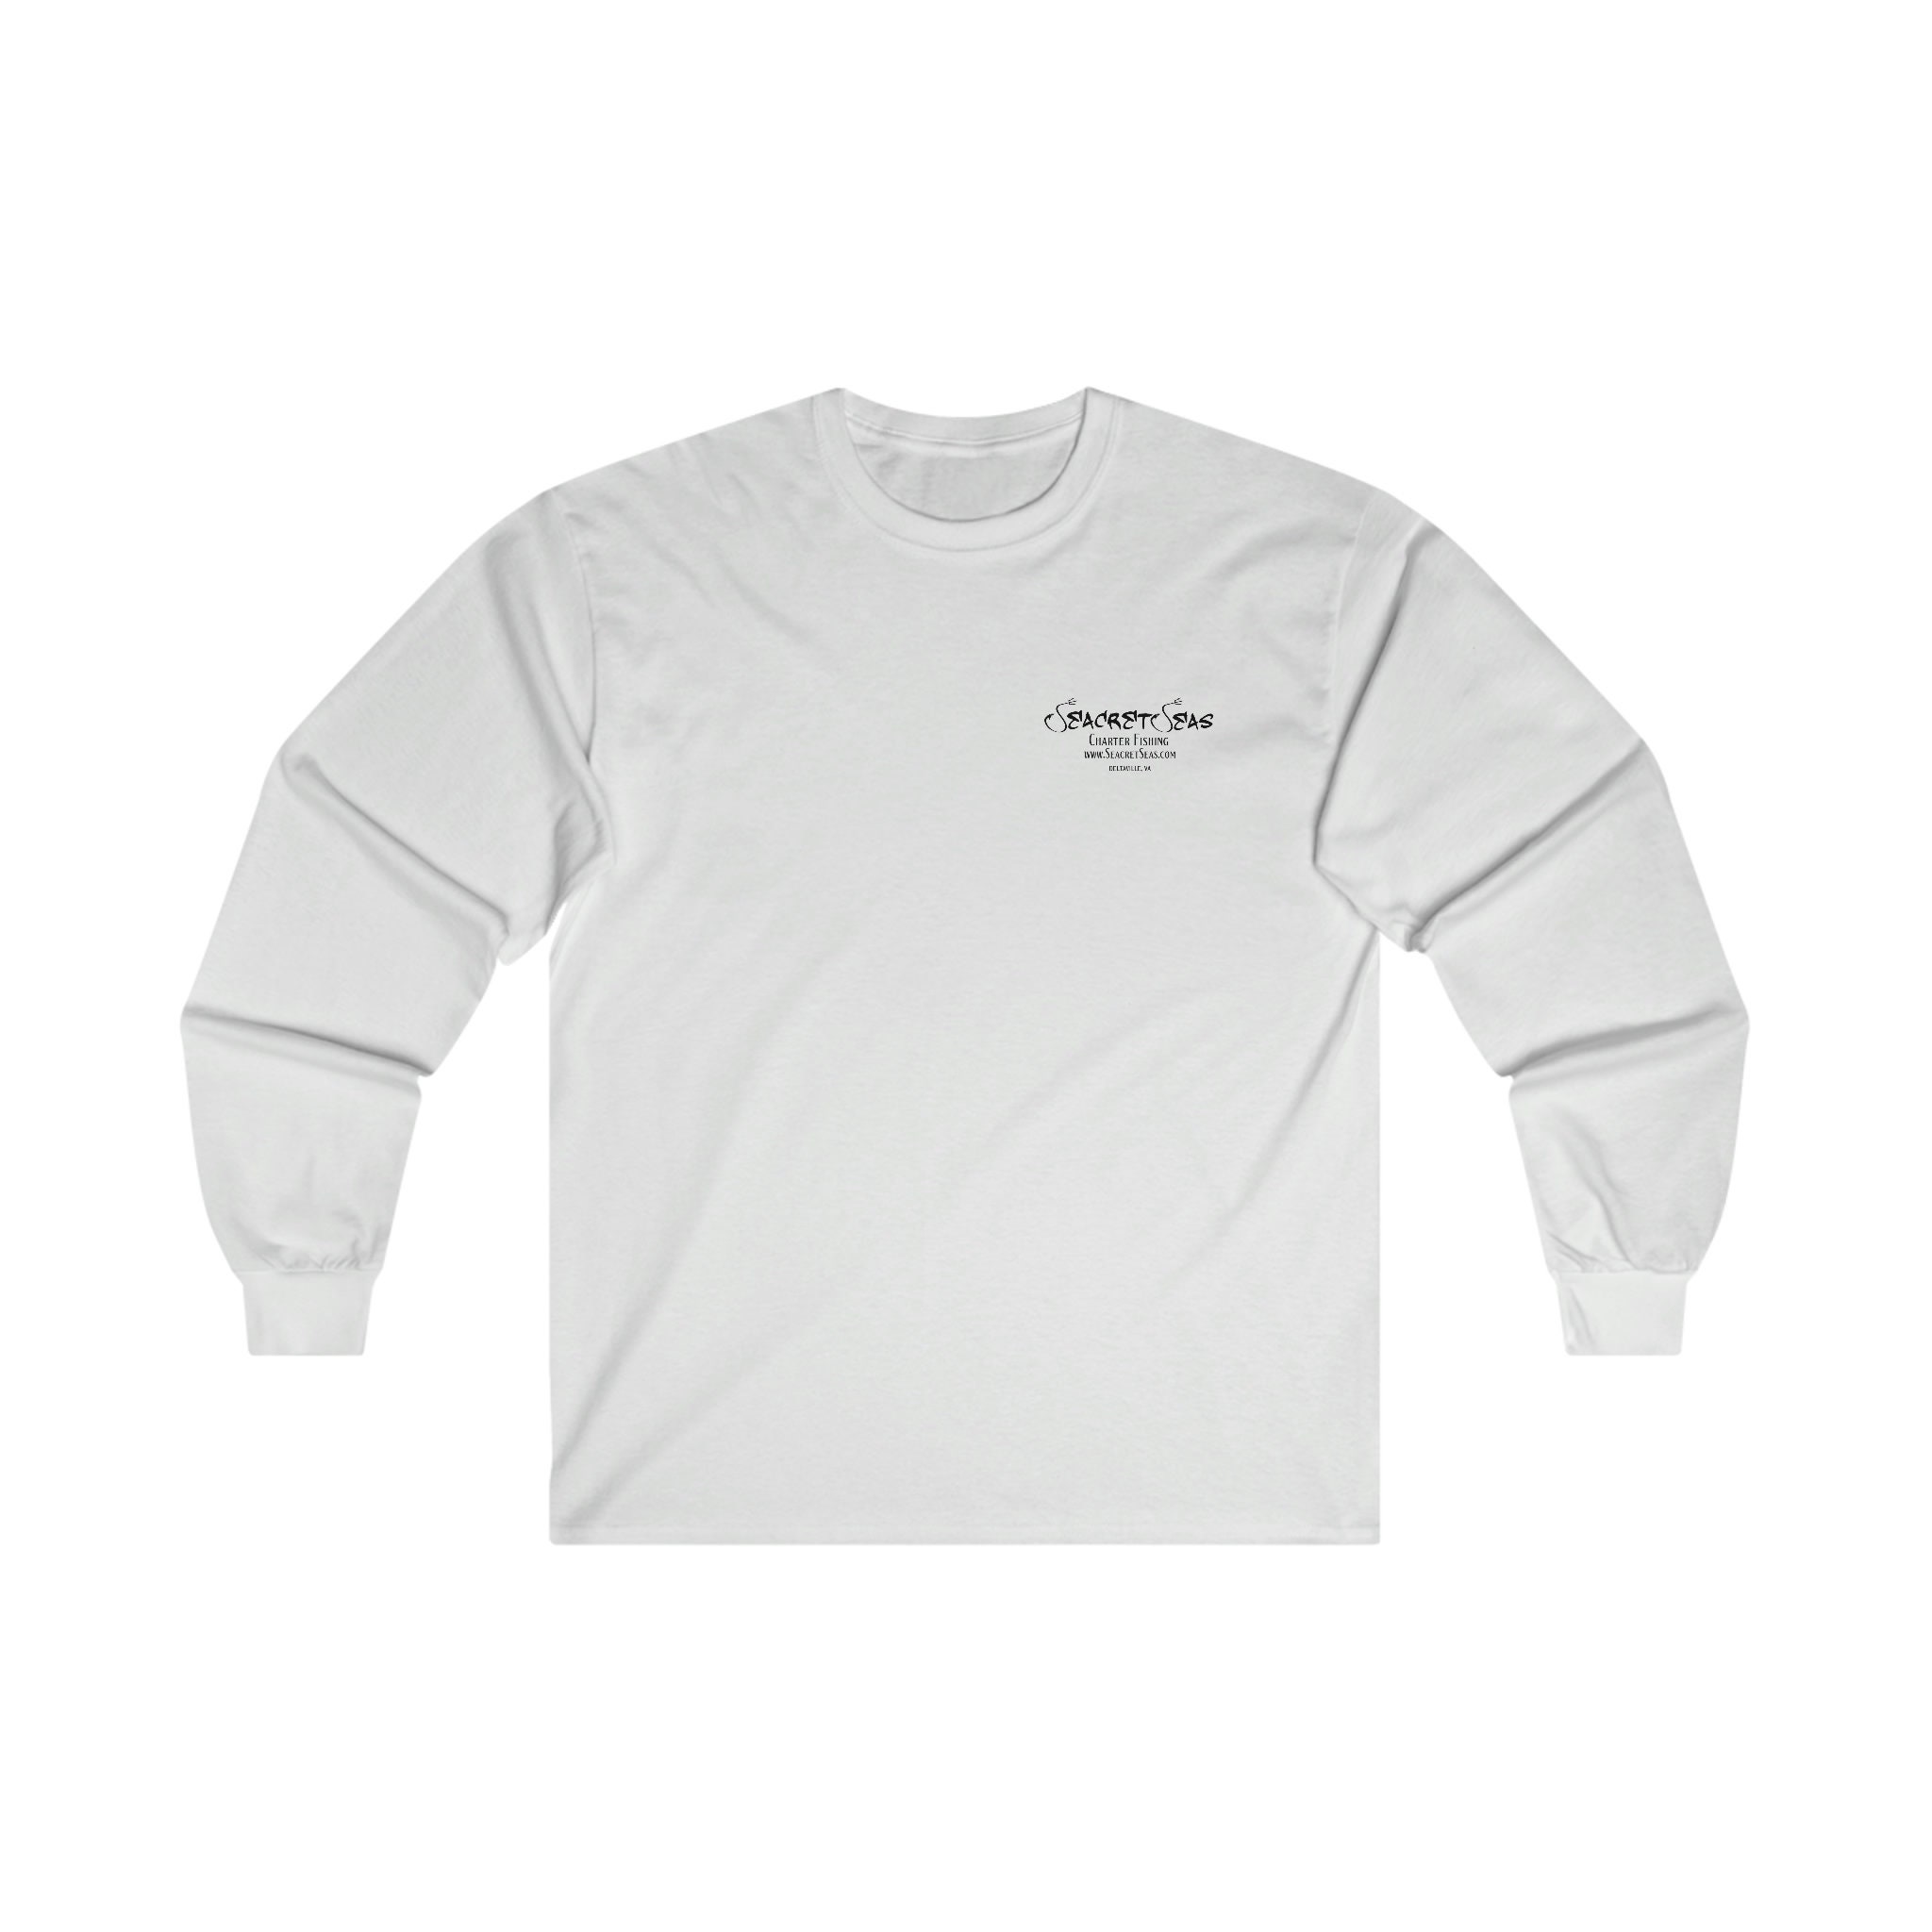 Cotton Long Sleeve Fishing Shirt -  Canada